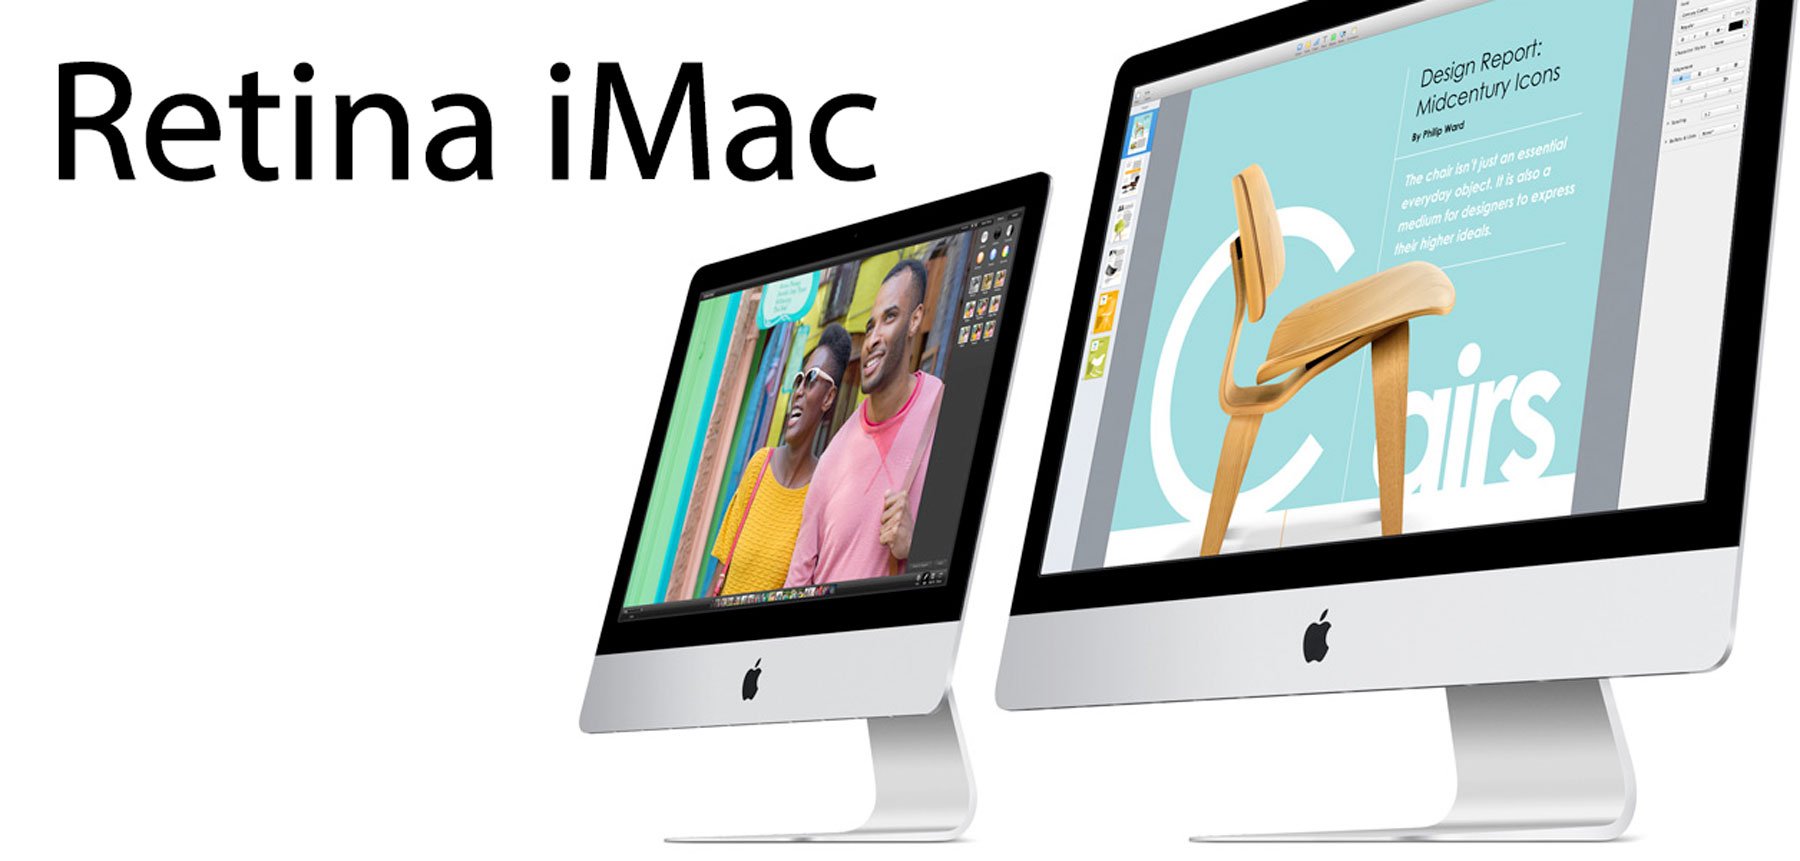 Retina iMac kommt, Retina MacBook Air später 1